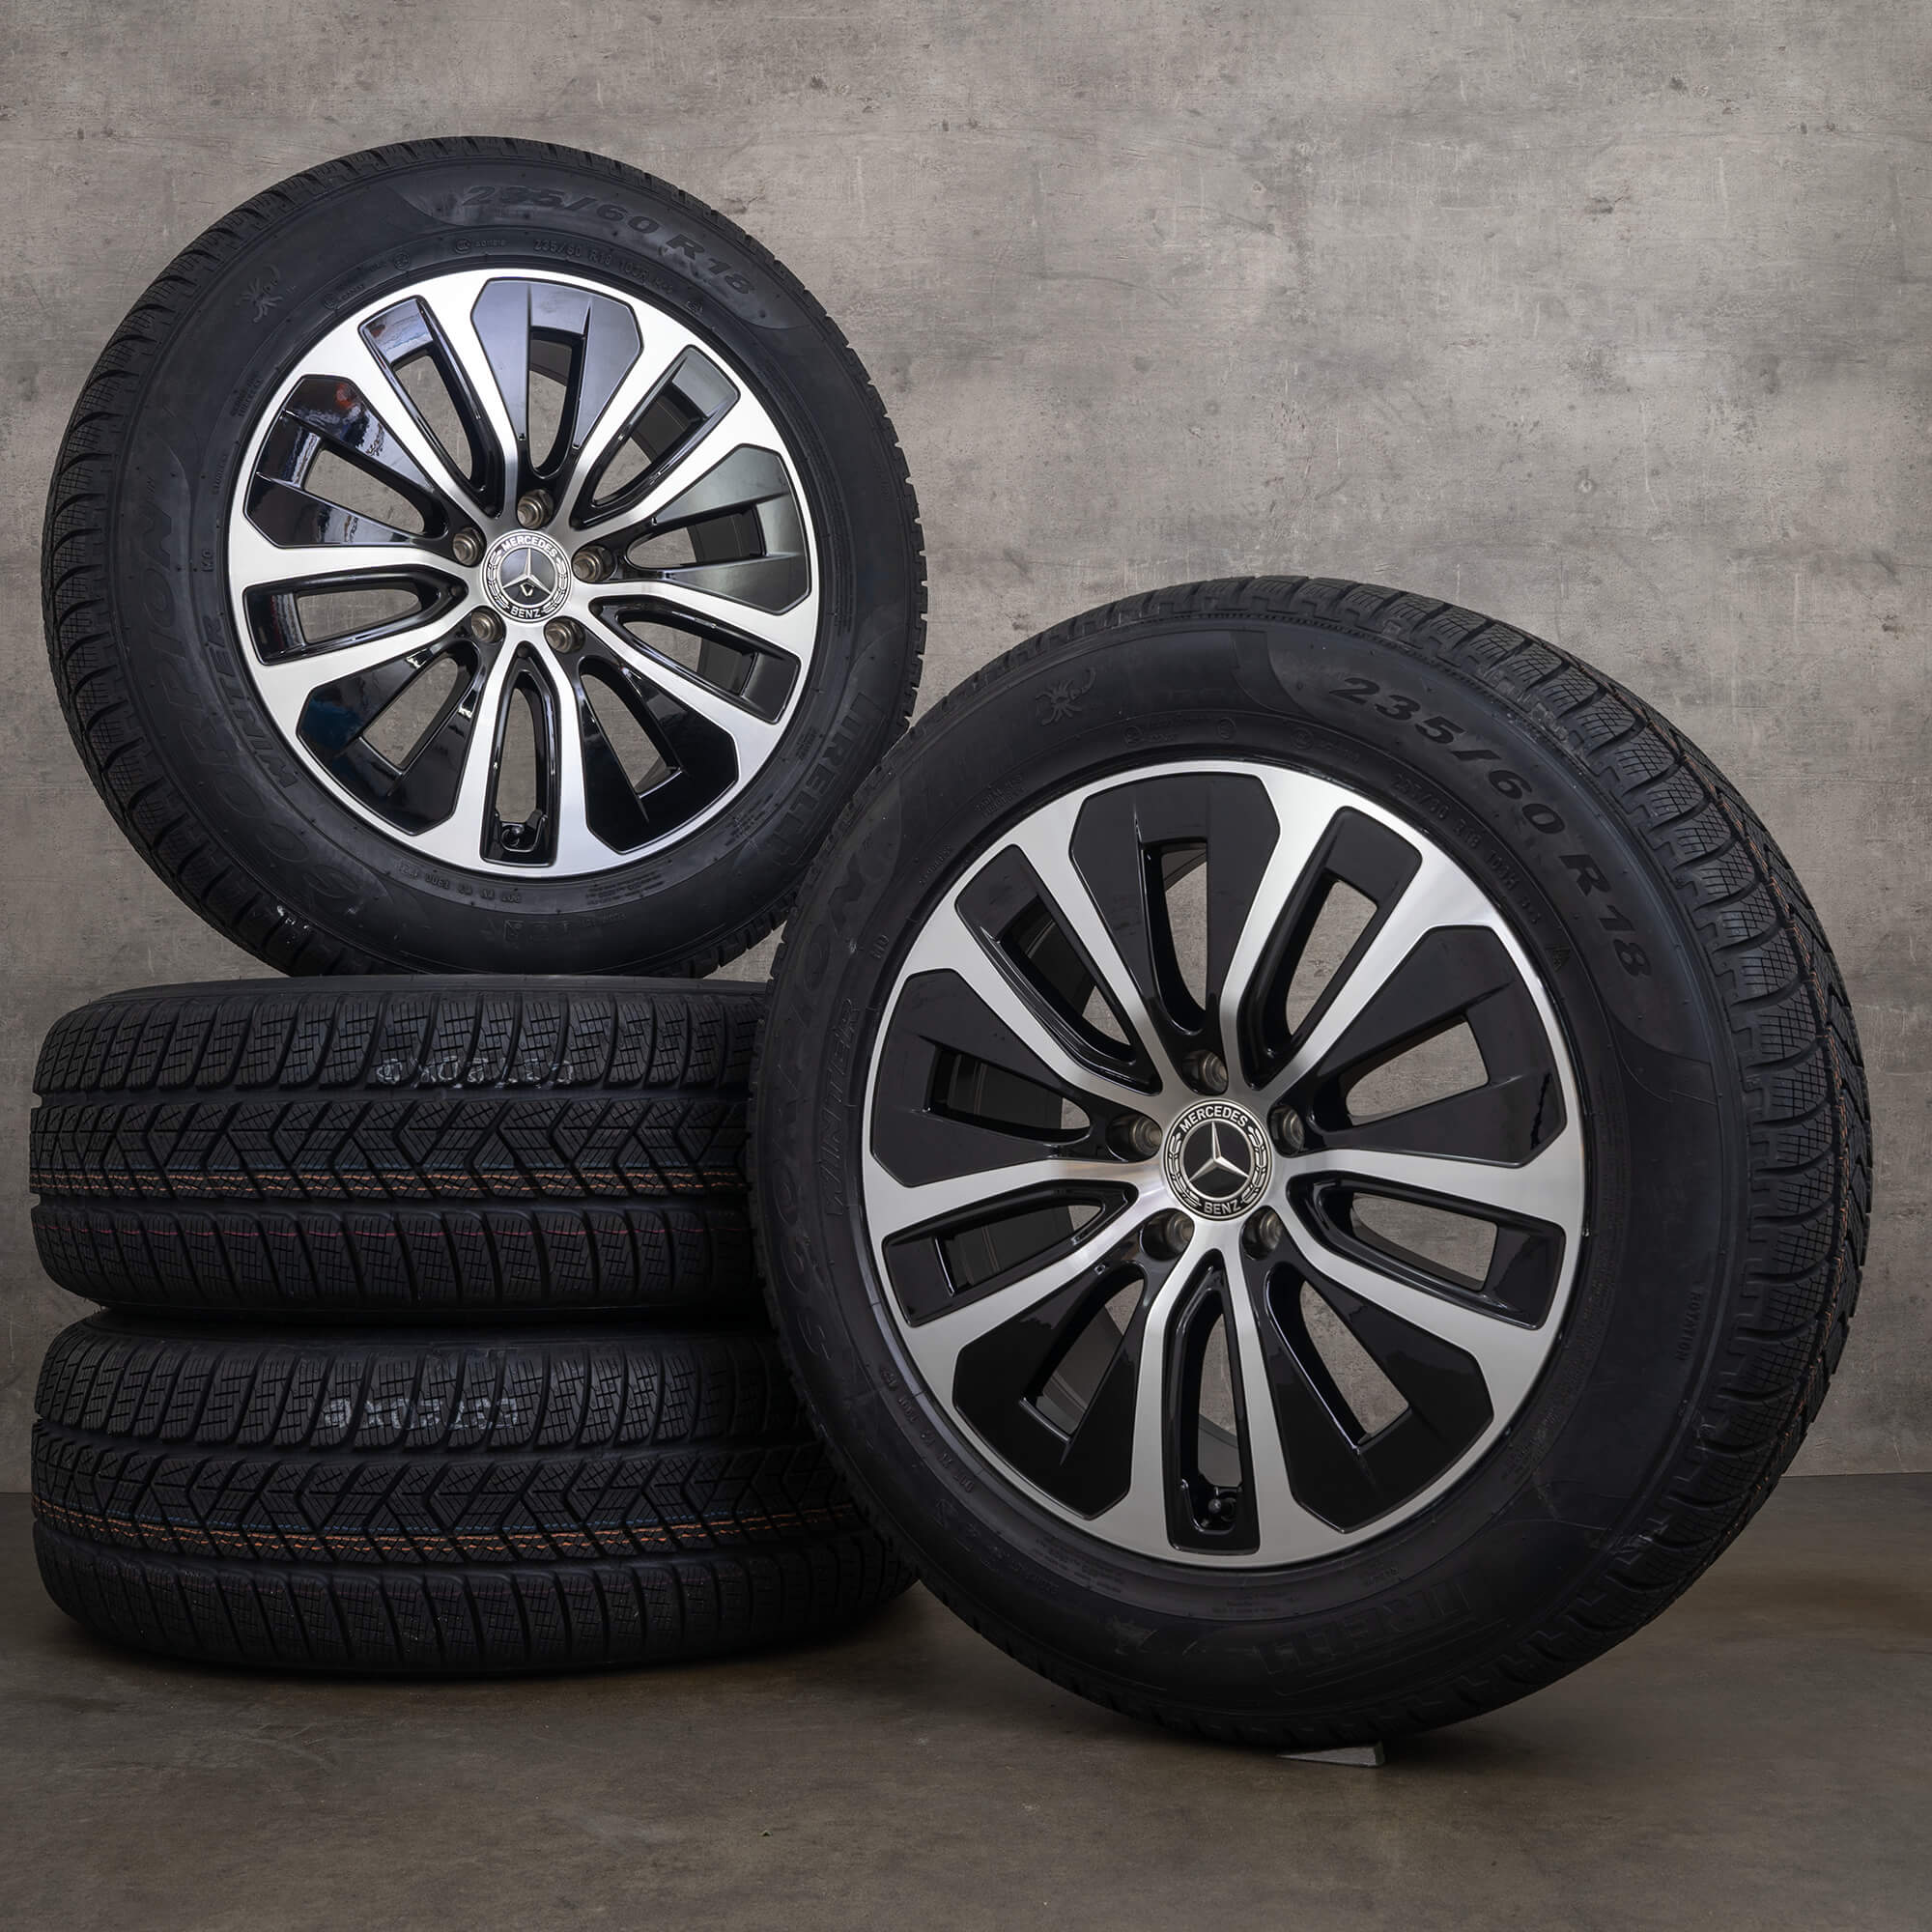 Llantas originales Mercedes GLC C254 de 18 pulgadas con neumáticos invierno A2544015100 negras pulidas a alto brillo NUEVO